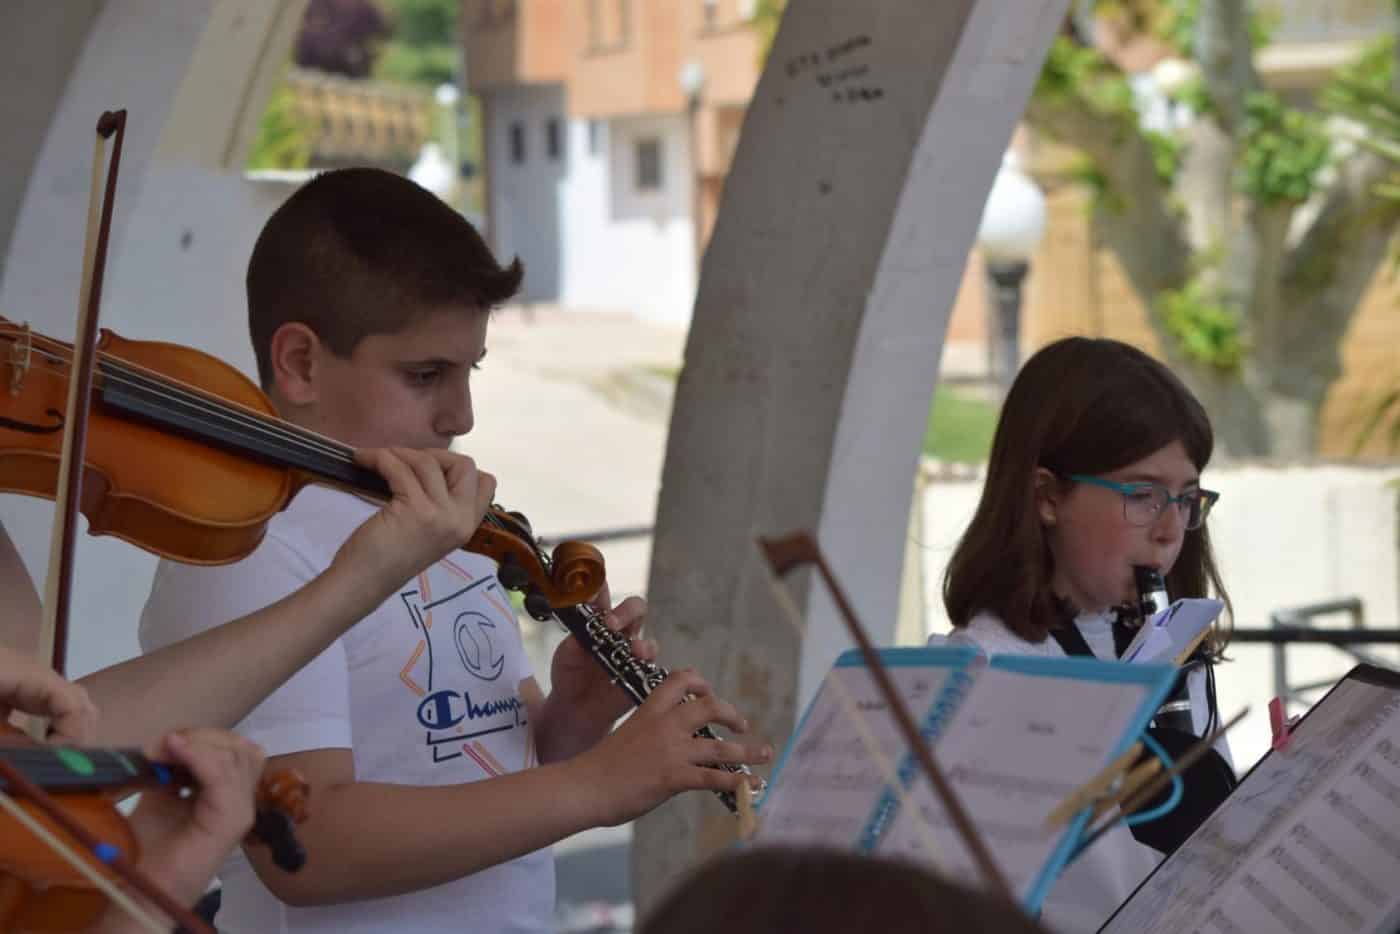 FOTOS: El Conservatorio Lucrecia Arana celebra el fin de curso sacando la música a la calle 44